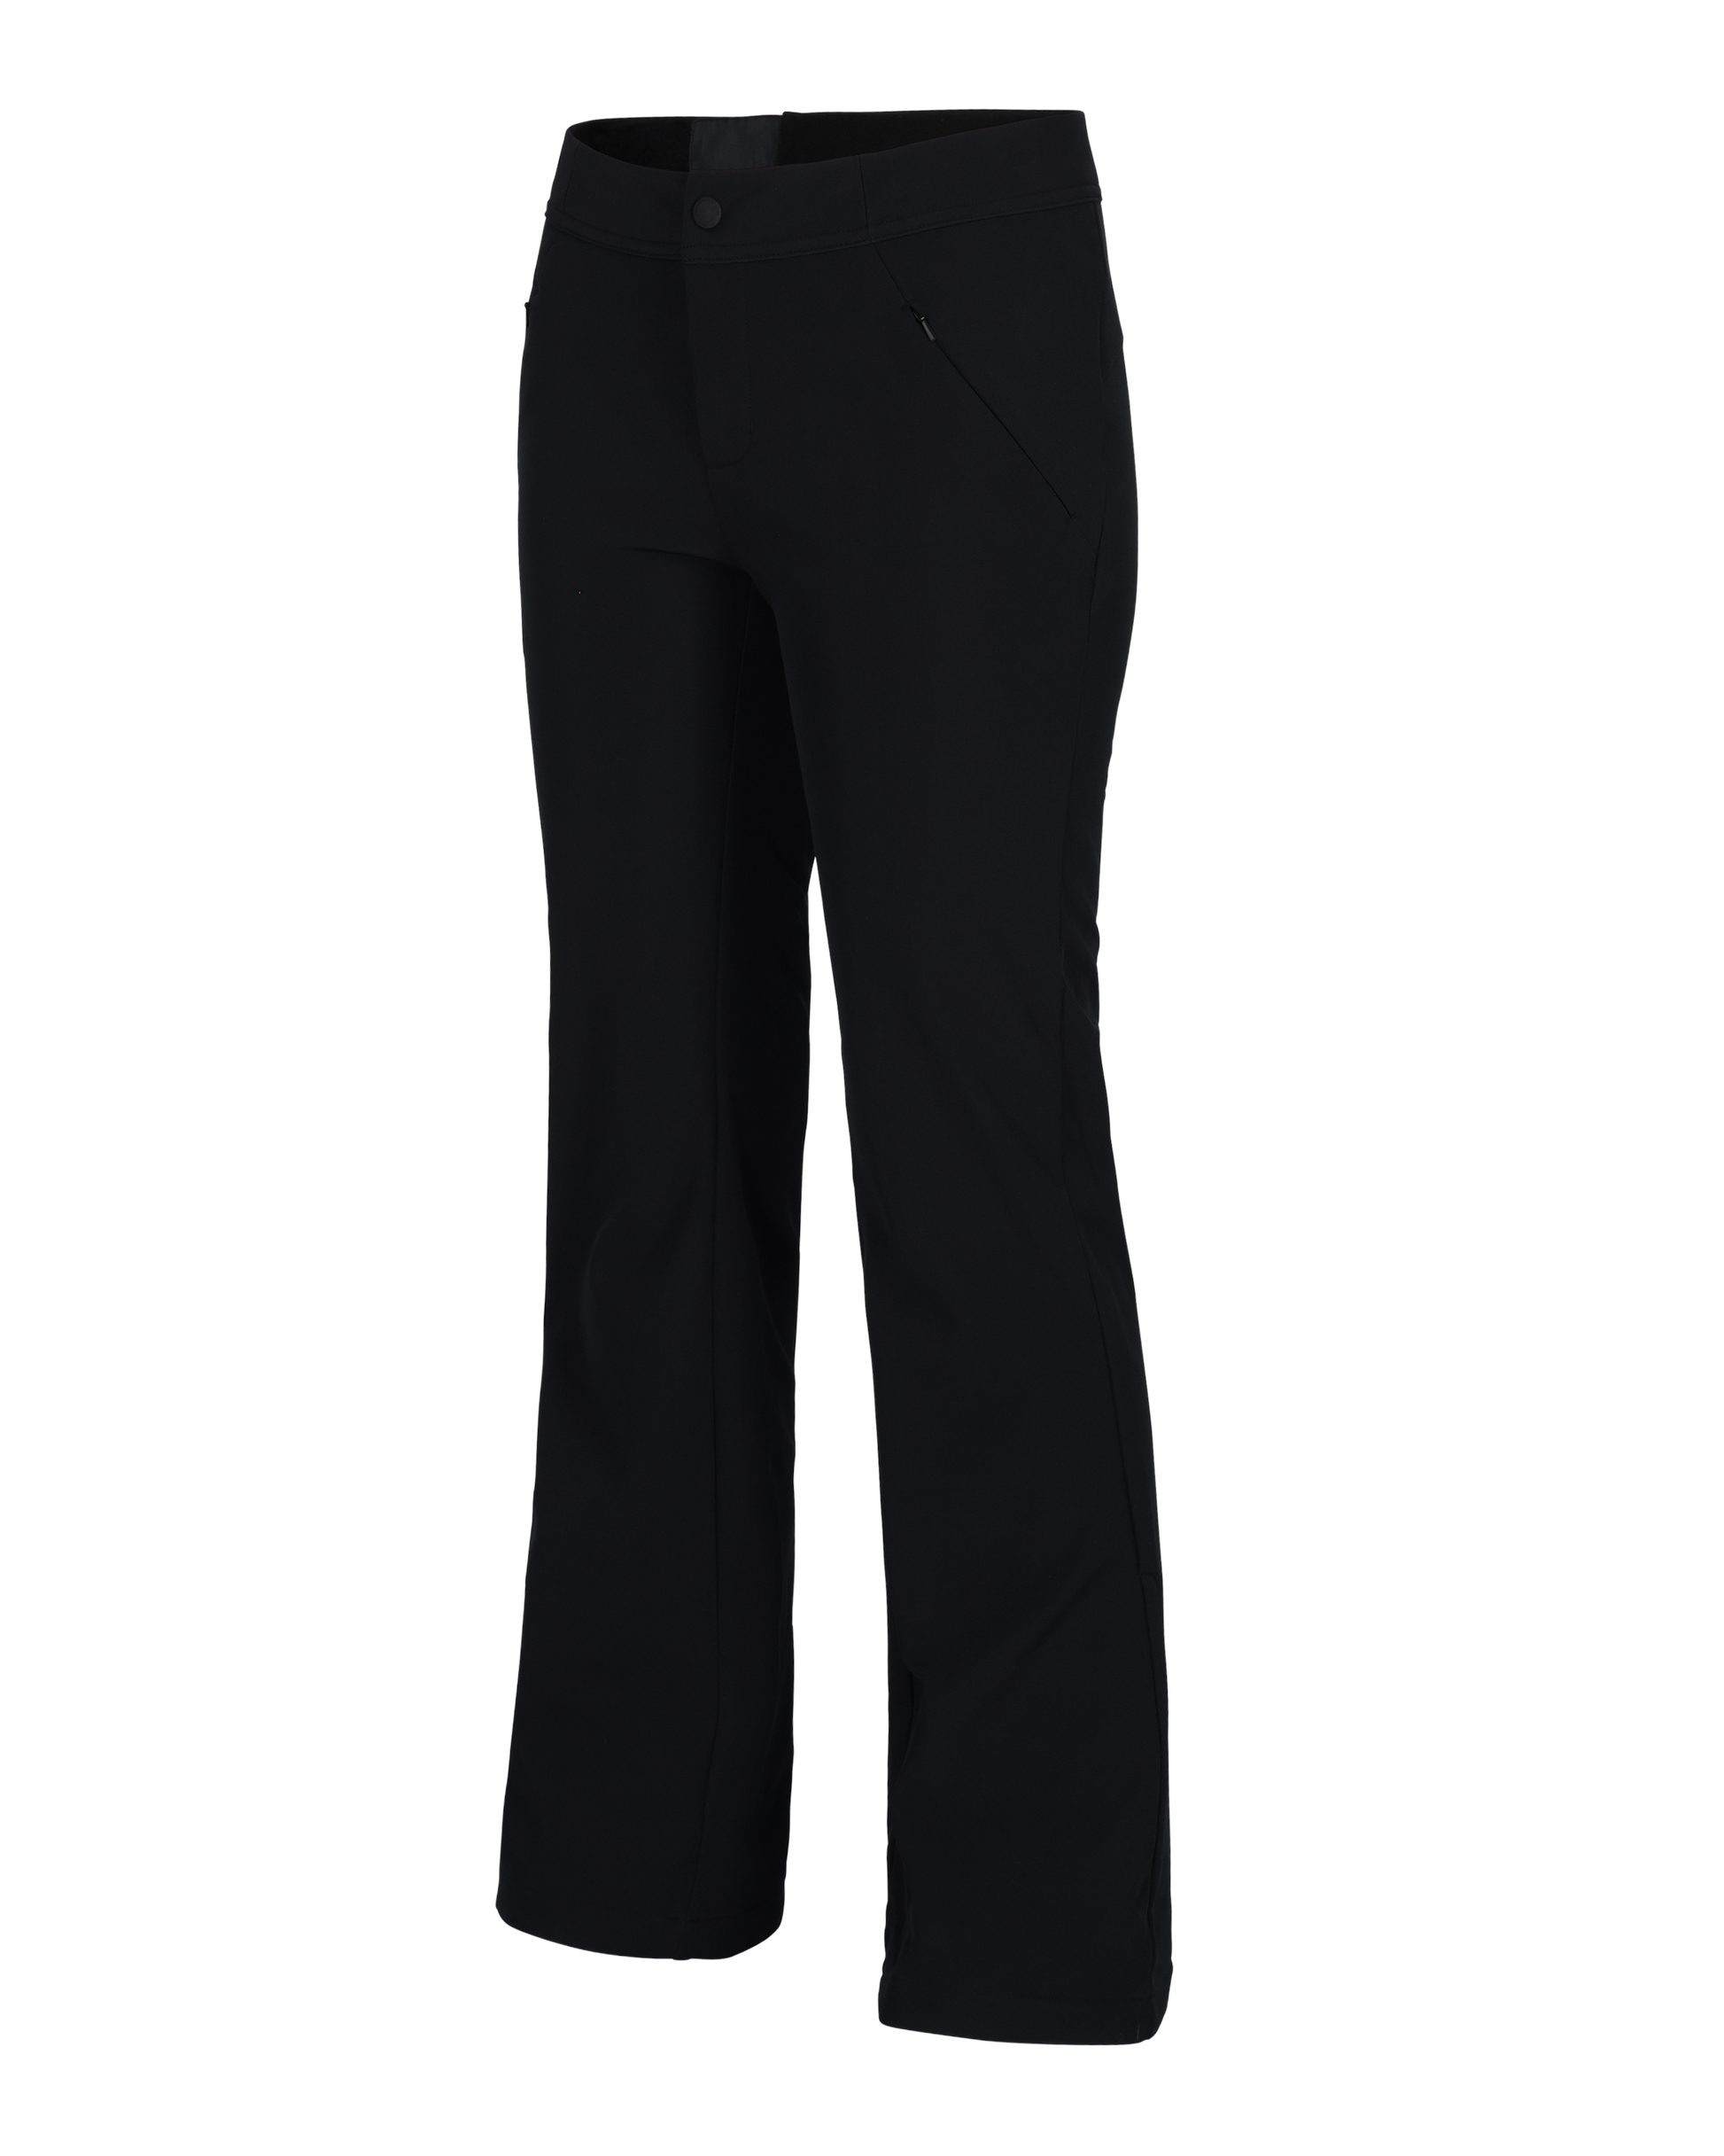 Vuarnet Sportswear Black Pants Trousers Women's Size 6